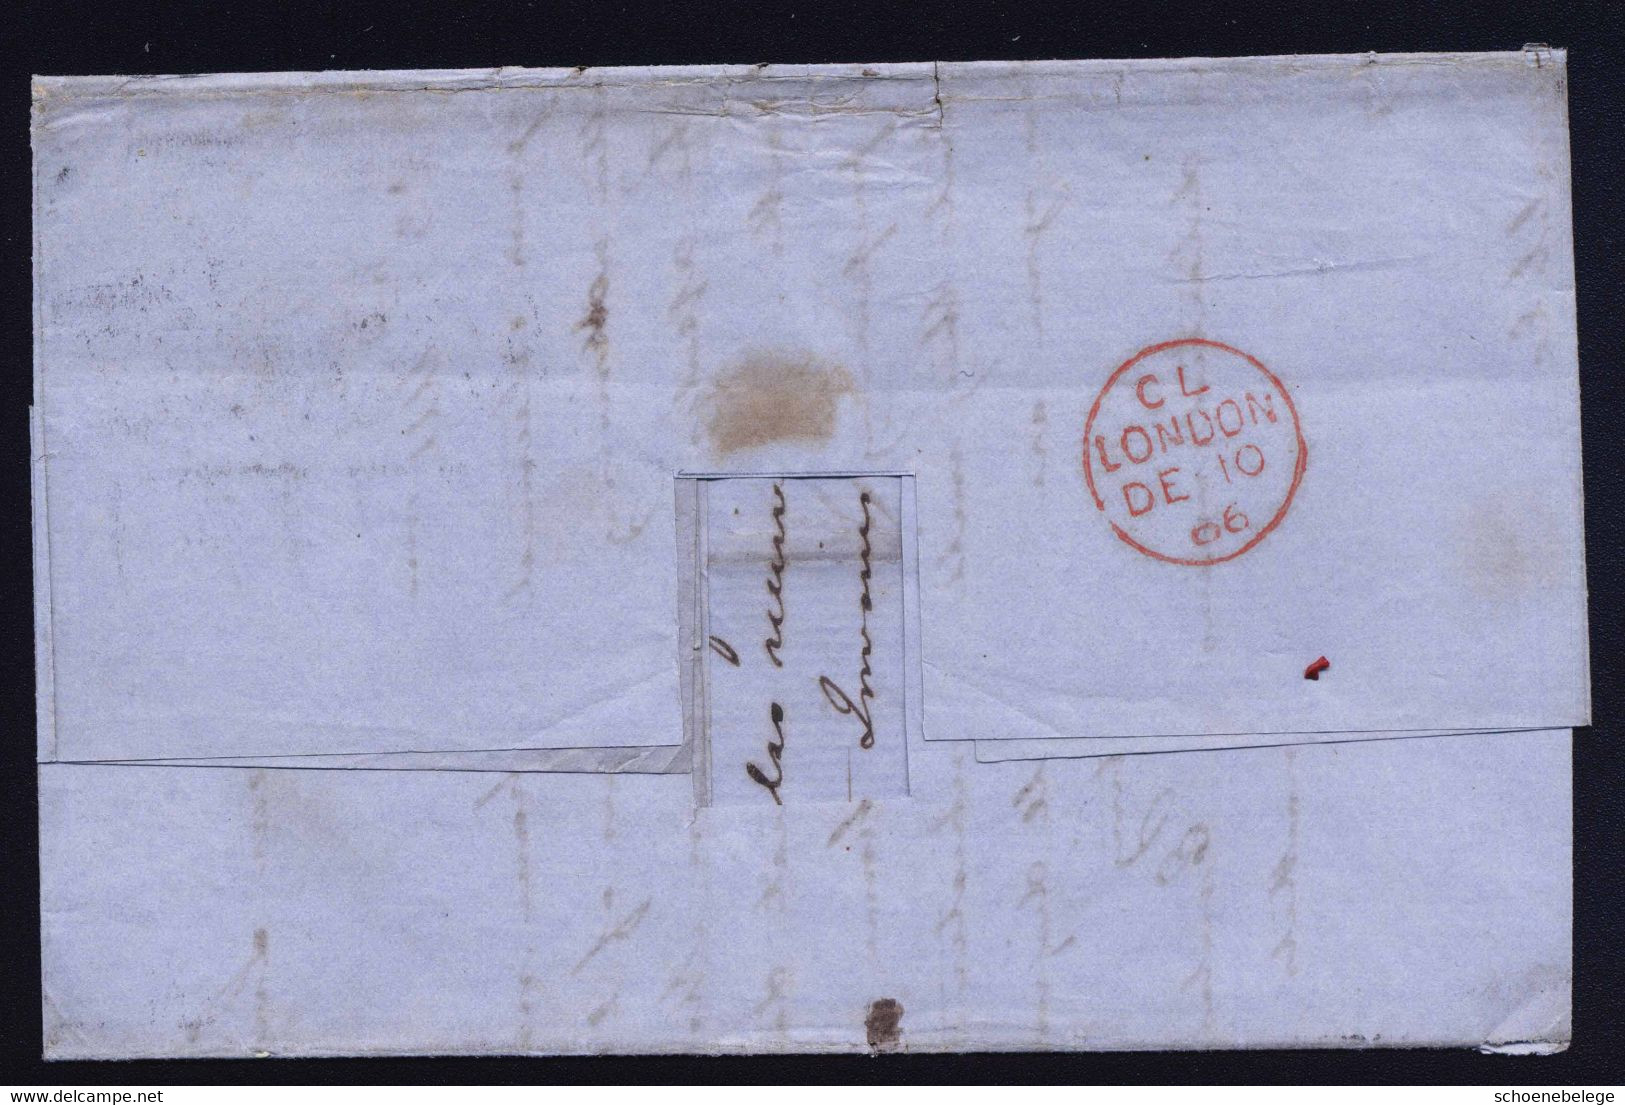 A6911) UK Great Britain Brief Von Bangor 08.12.66 N. Buenos Aires / Argentinien M. EF Mi.27 Platte 4 - Brieven En Documenten